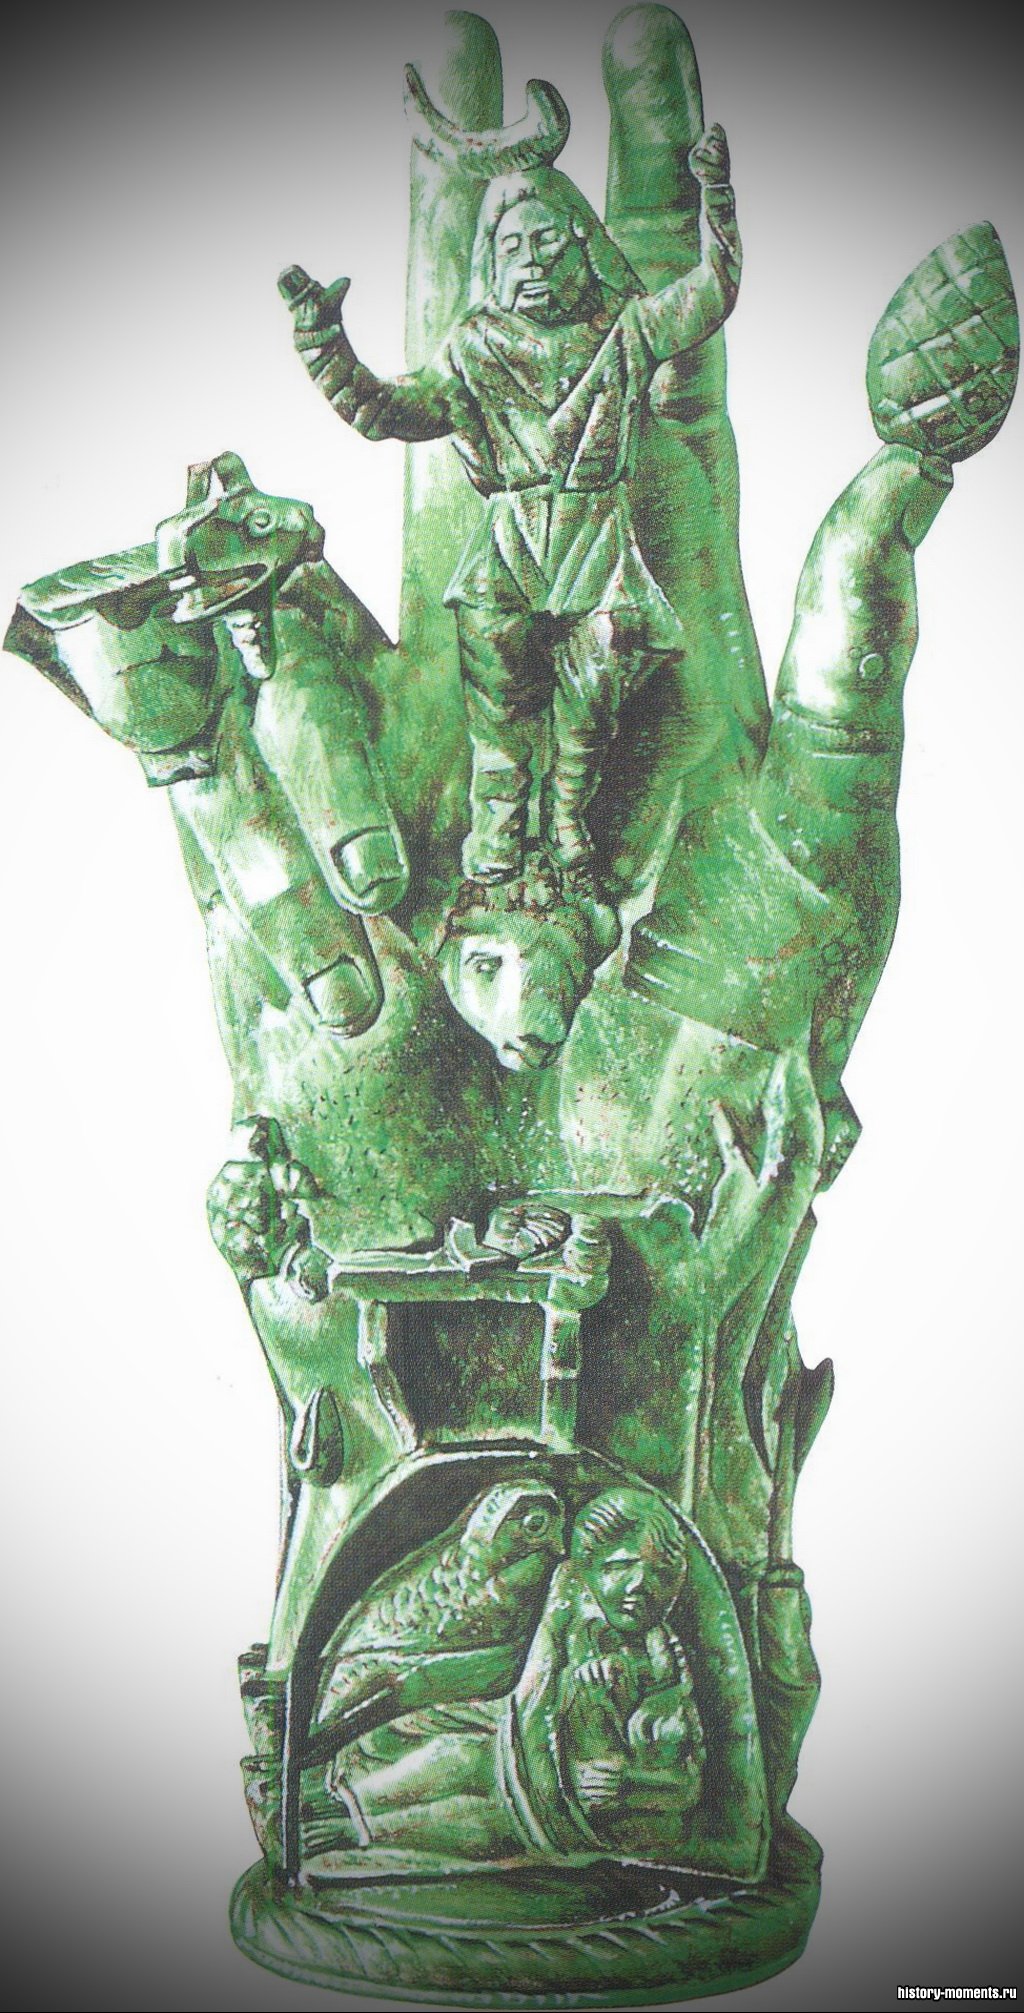 Бронзовая скульптура руки с символическими фигурами, призванными отгонять злых духов.